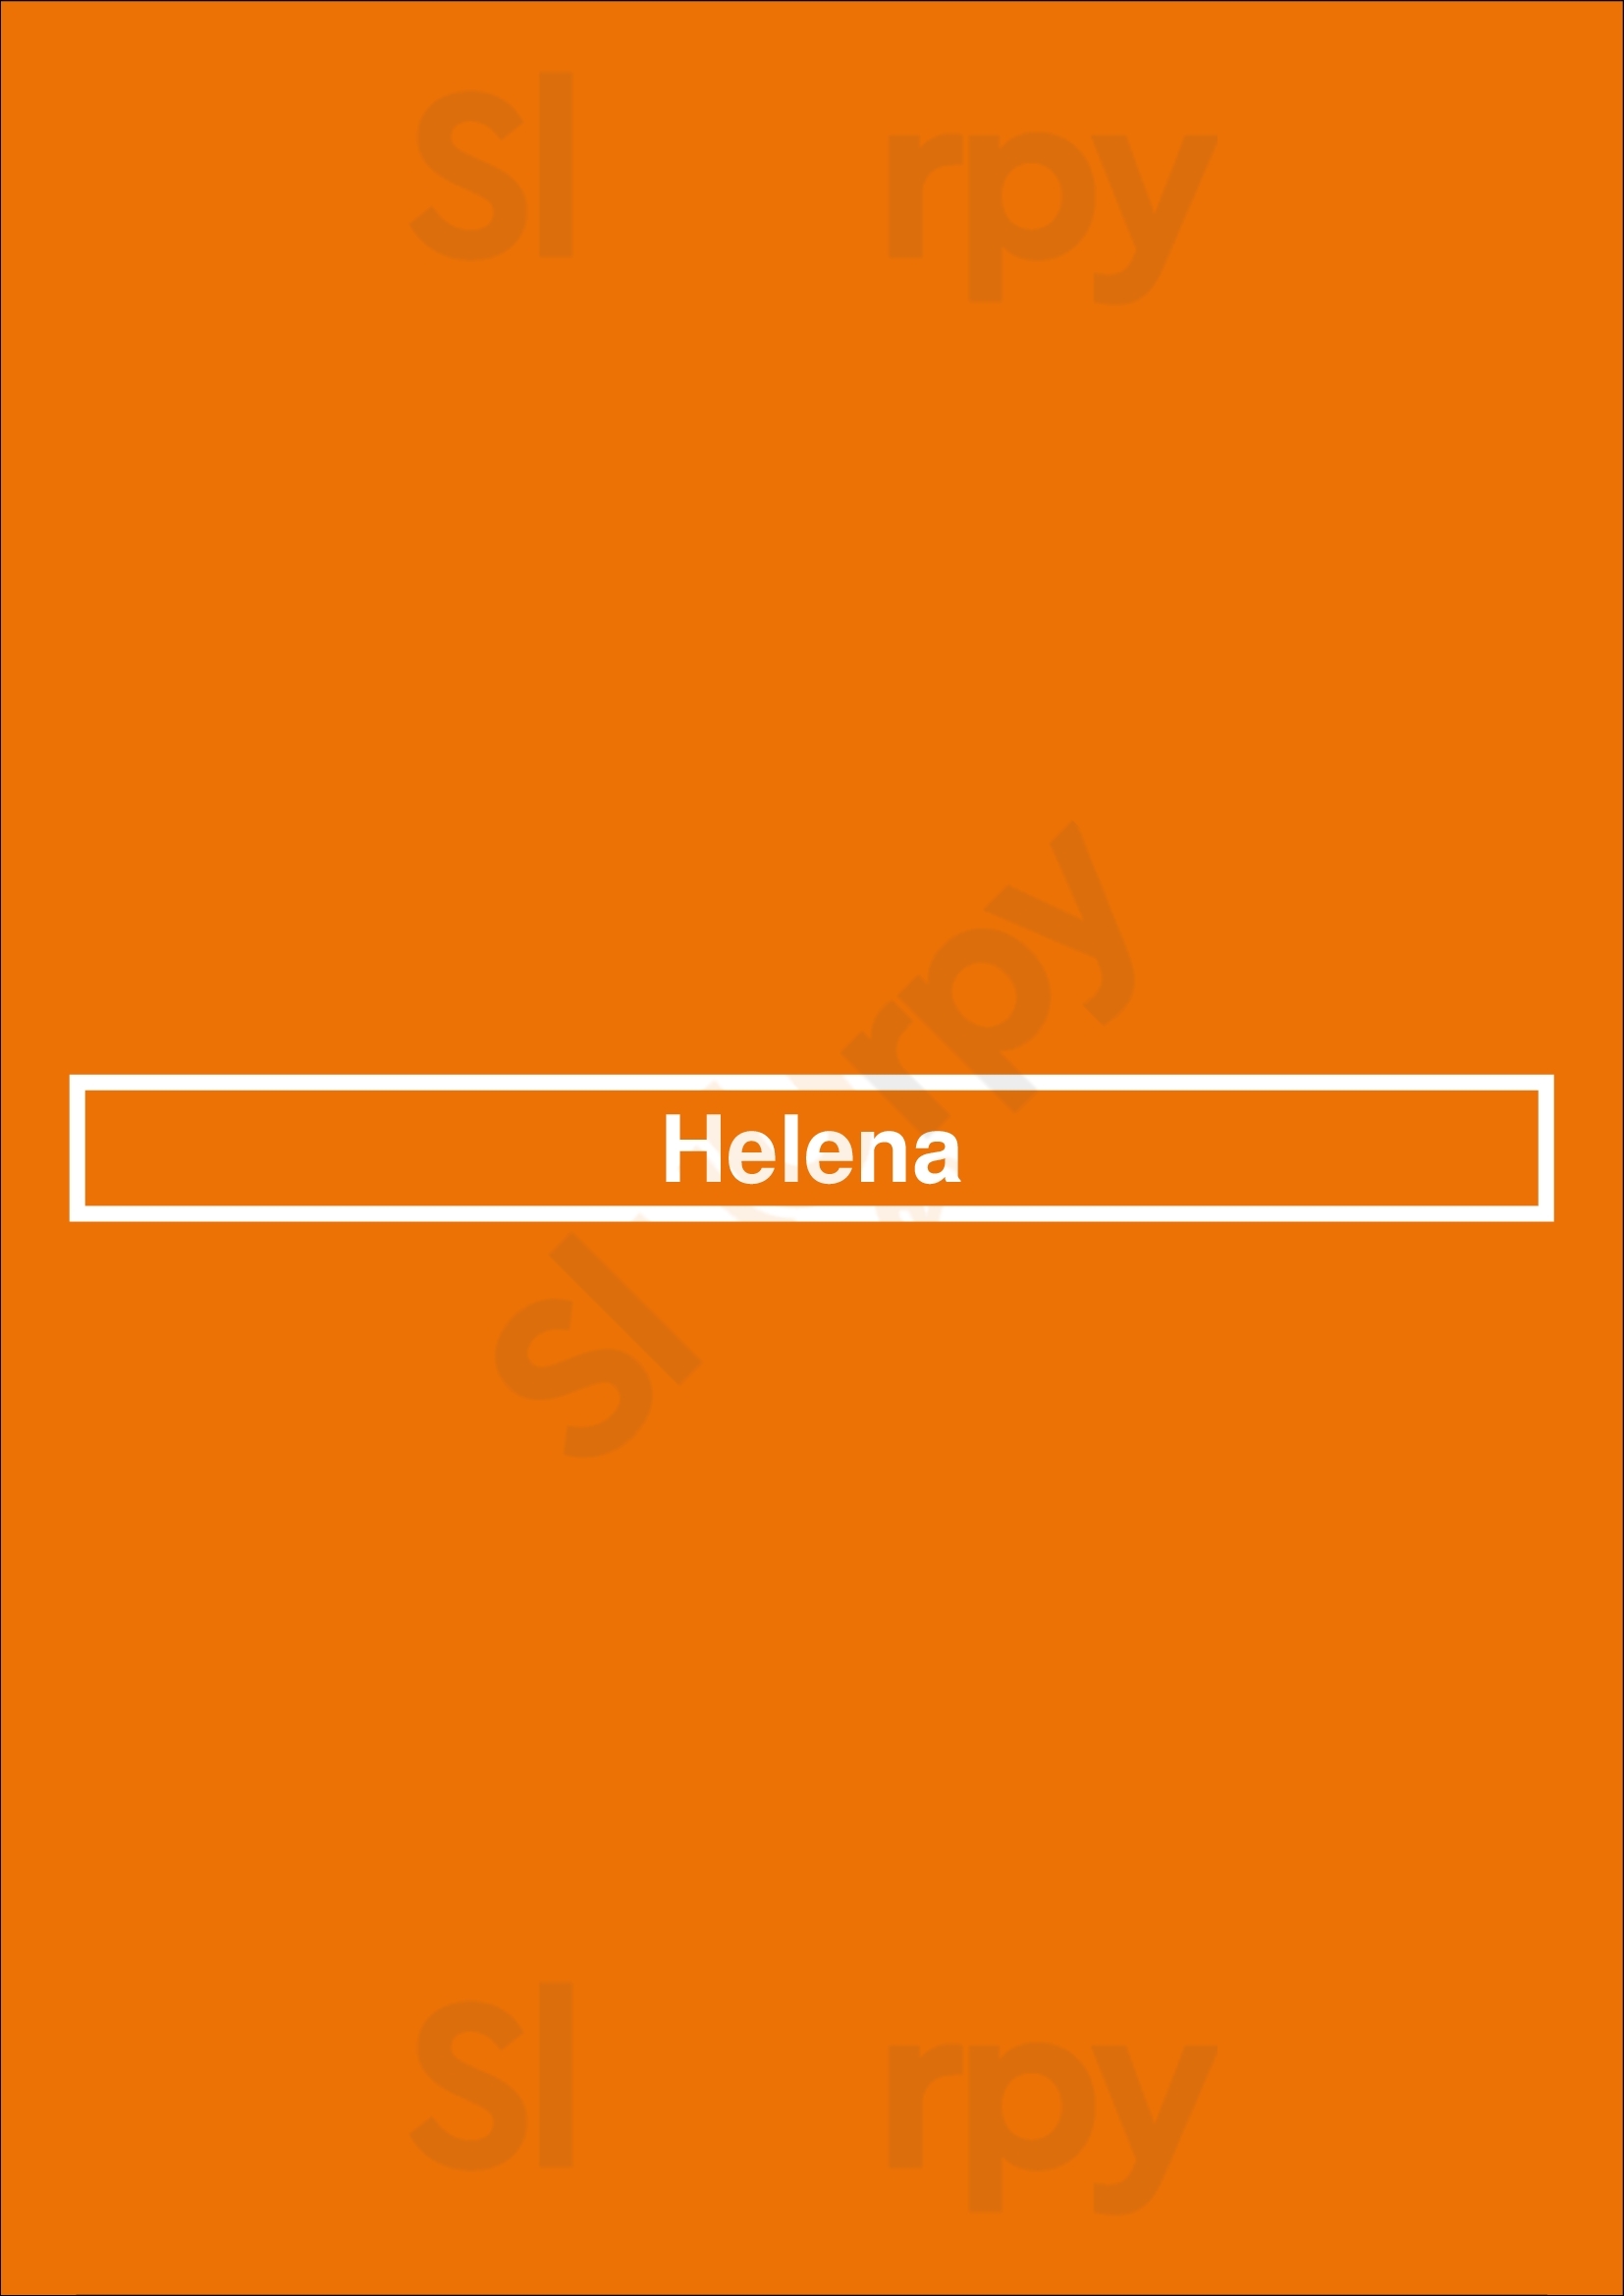 Helena Montreal Menu - 1